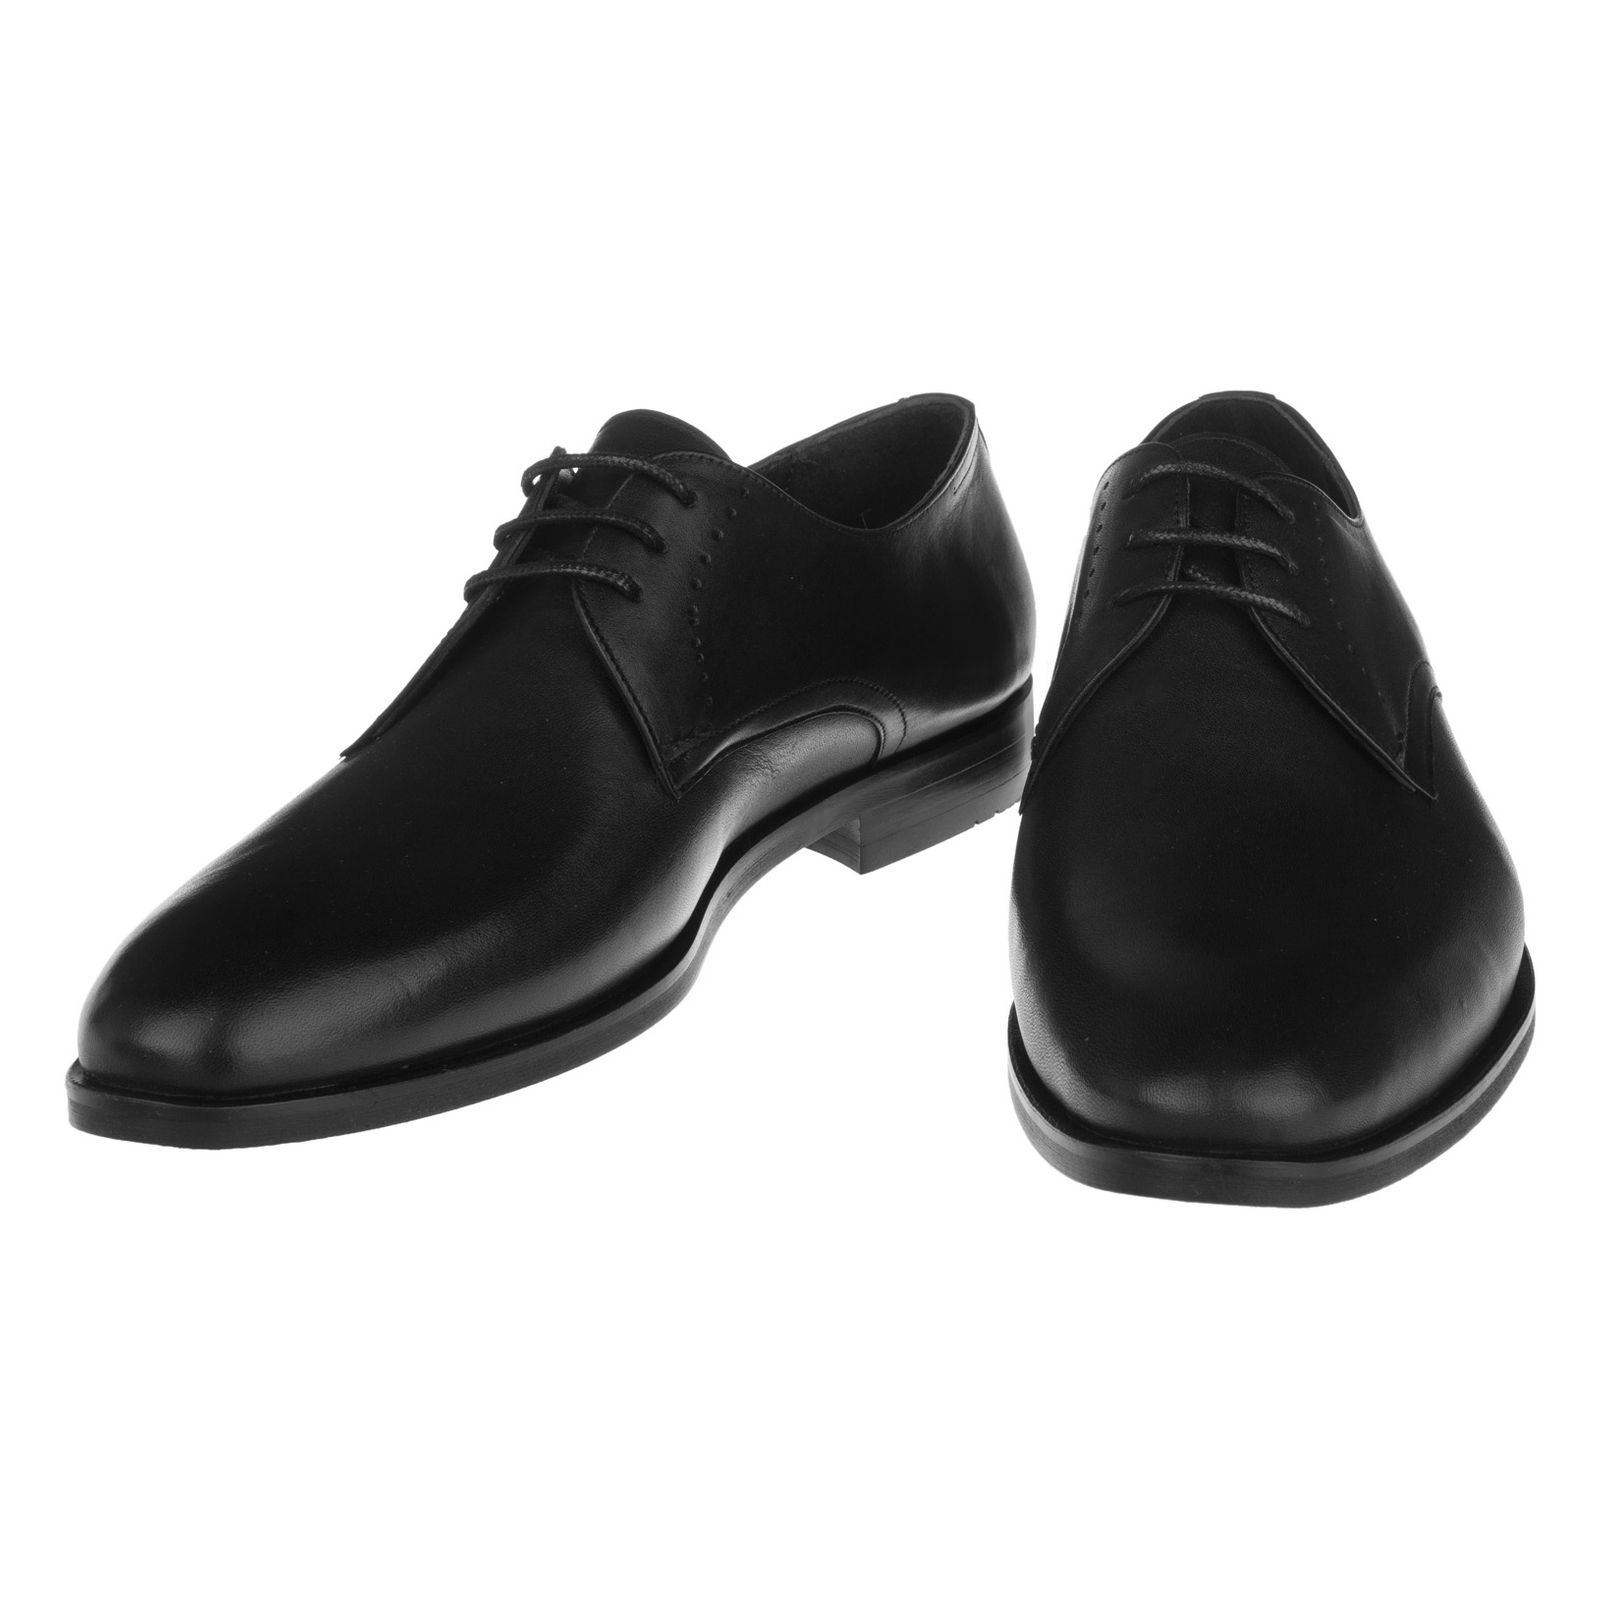 کفش مردانه گاندو مدل 99-721 - مشکی - 4